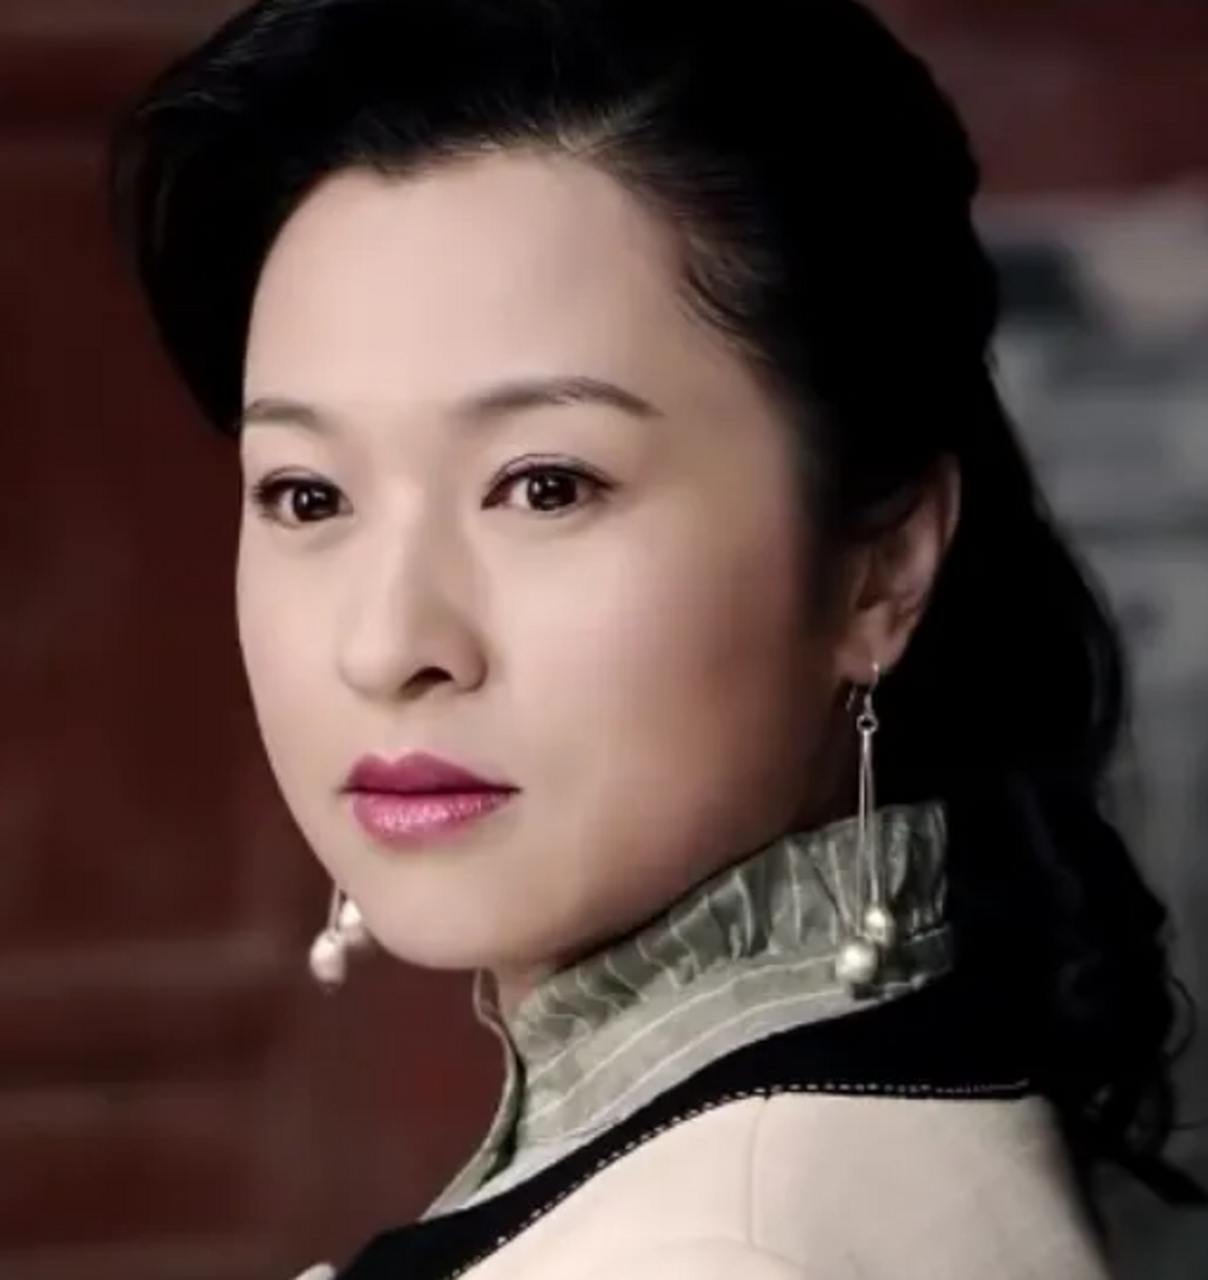 扮演者魏小军,1978年3月14日出生于黑龙江省哈尔滨市,中国内地女演员